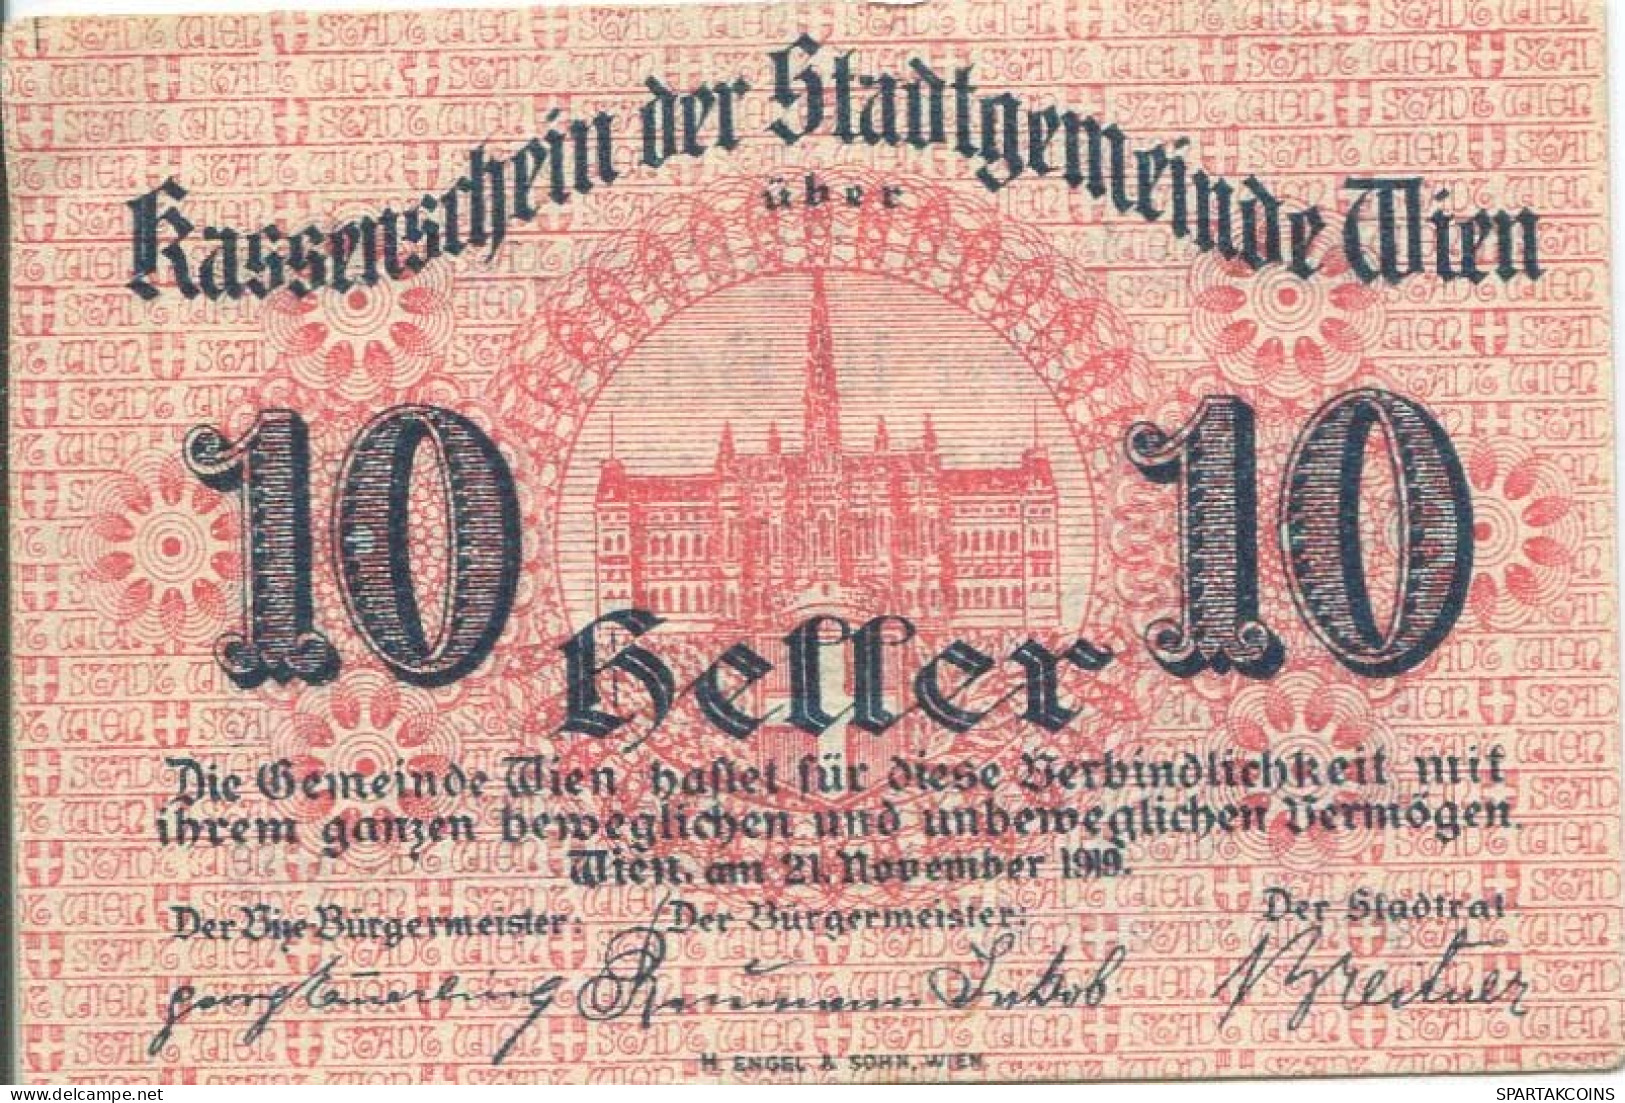 10 HELLER 1919 Stadt Wien Österreich Notgeld Papiergeld Banknote #PL768 - [11] Local Banknote Issues